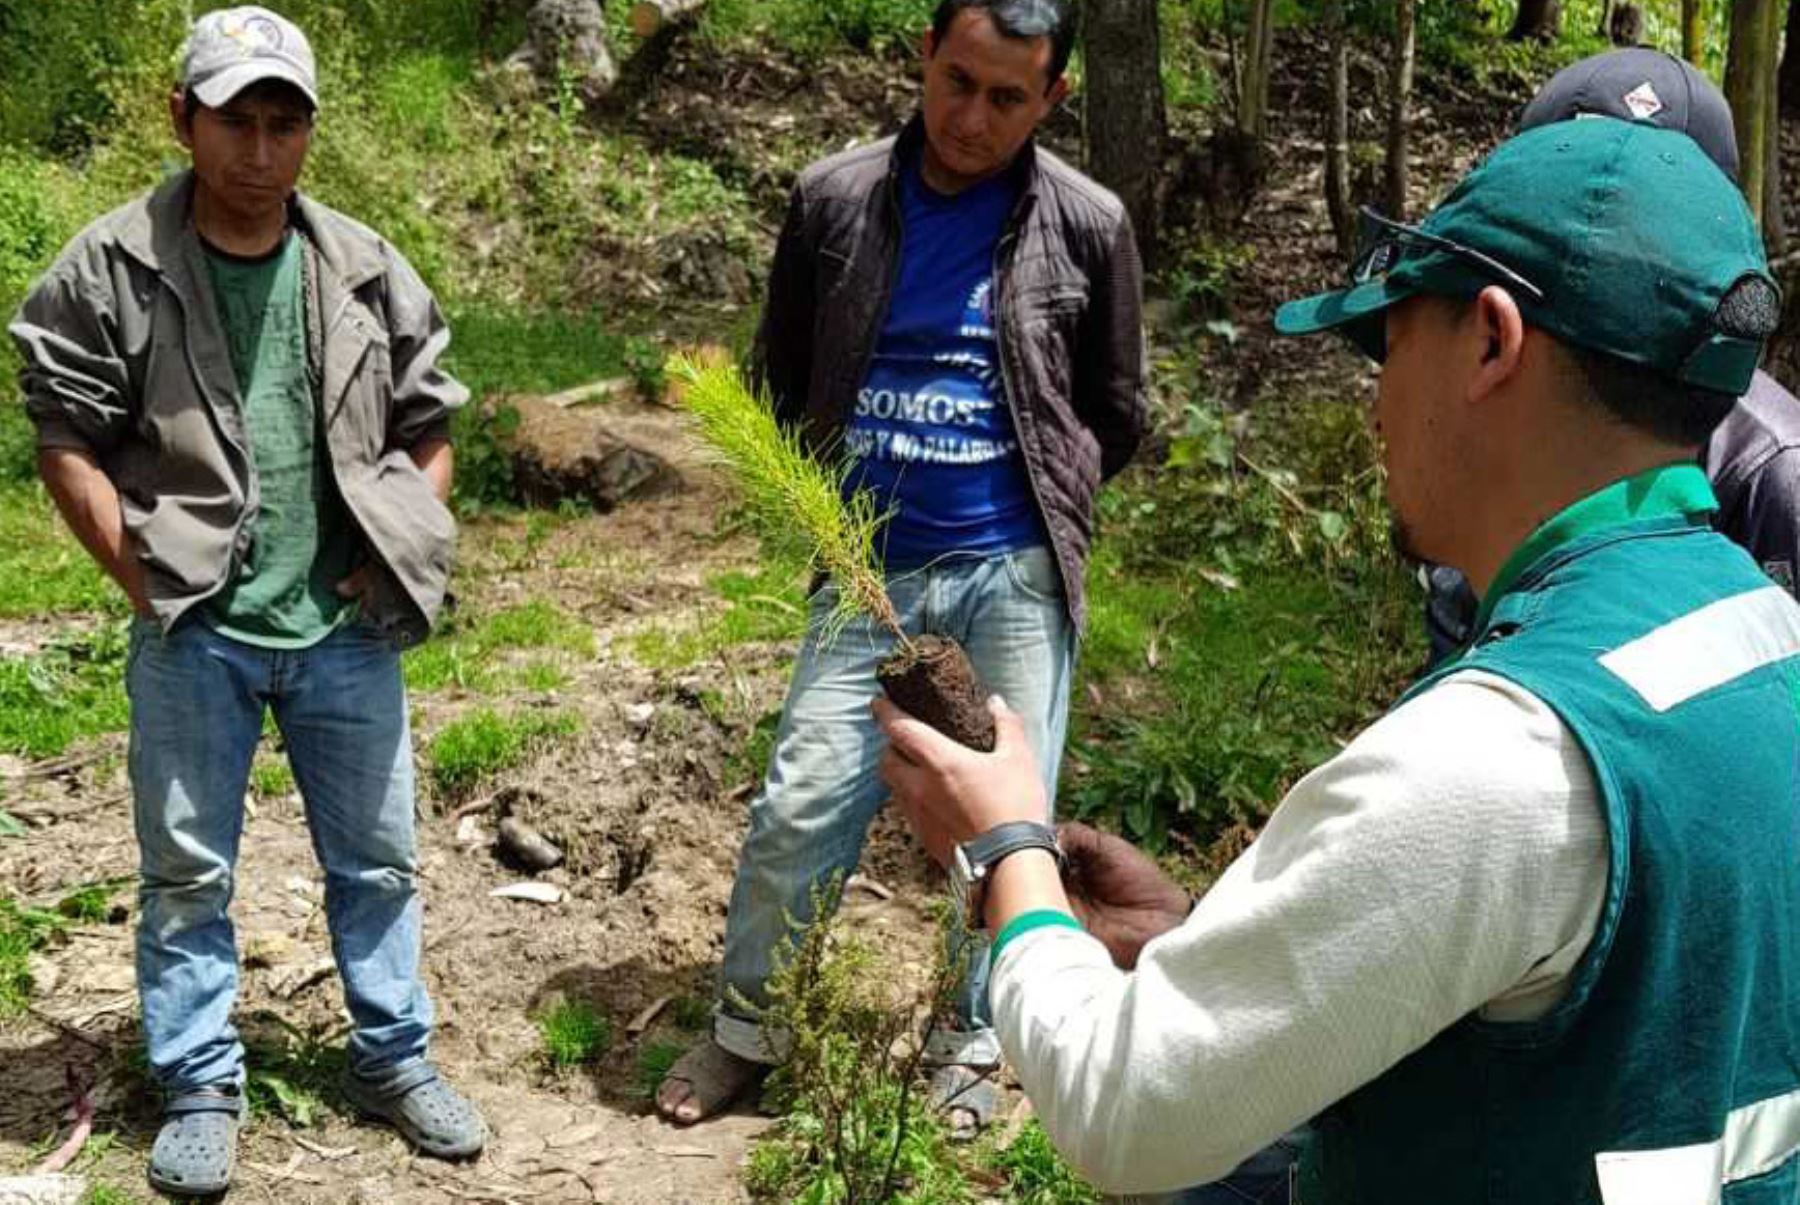 El Ejecutivo, a través del Ministerio de Agricultura (Minagri), impulsa el establecimiento de plantaciones forestales en Cajamarca para recuperar tierras afectadas por incendios forestales.